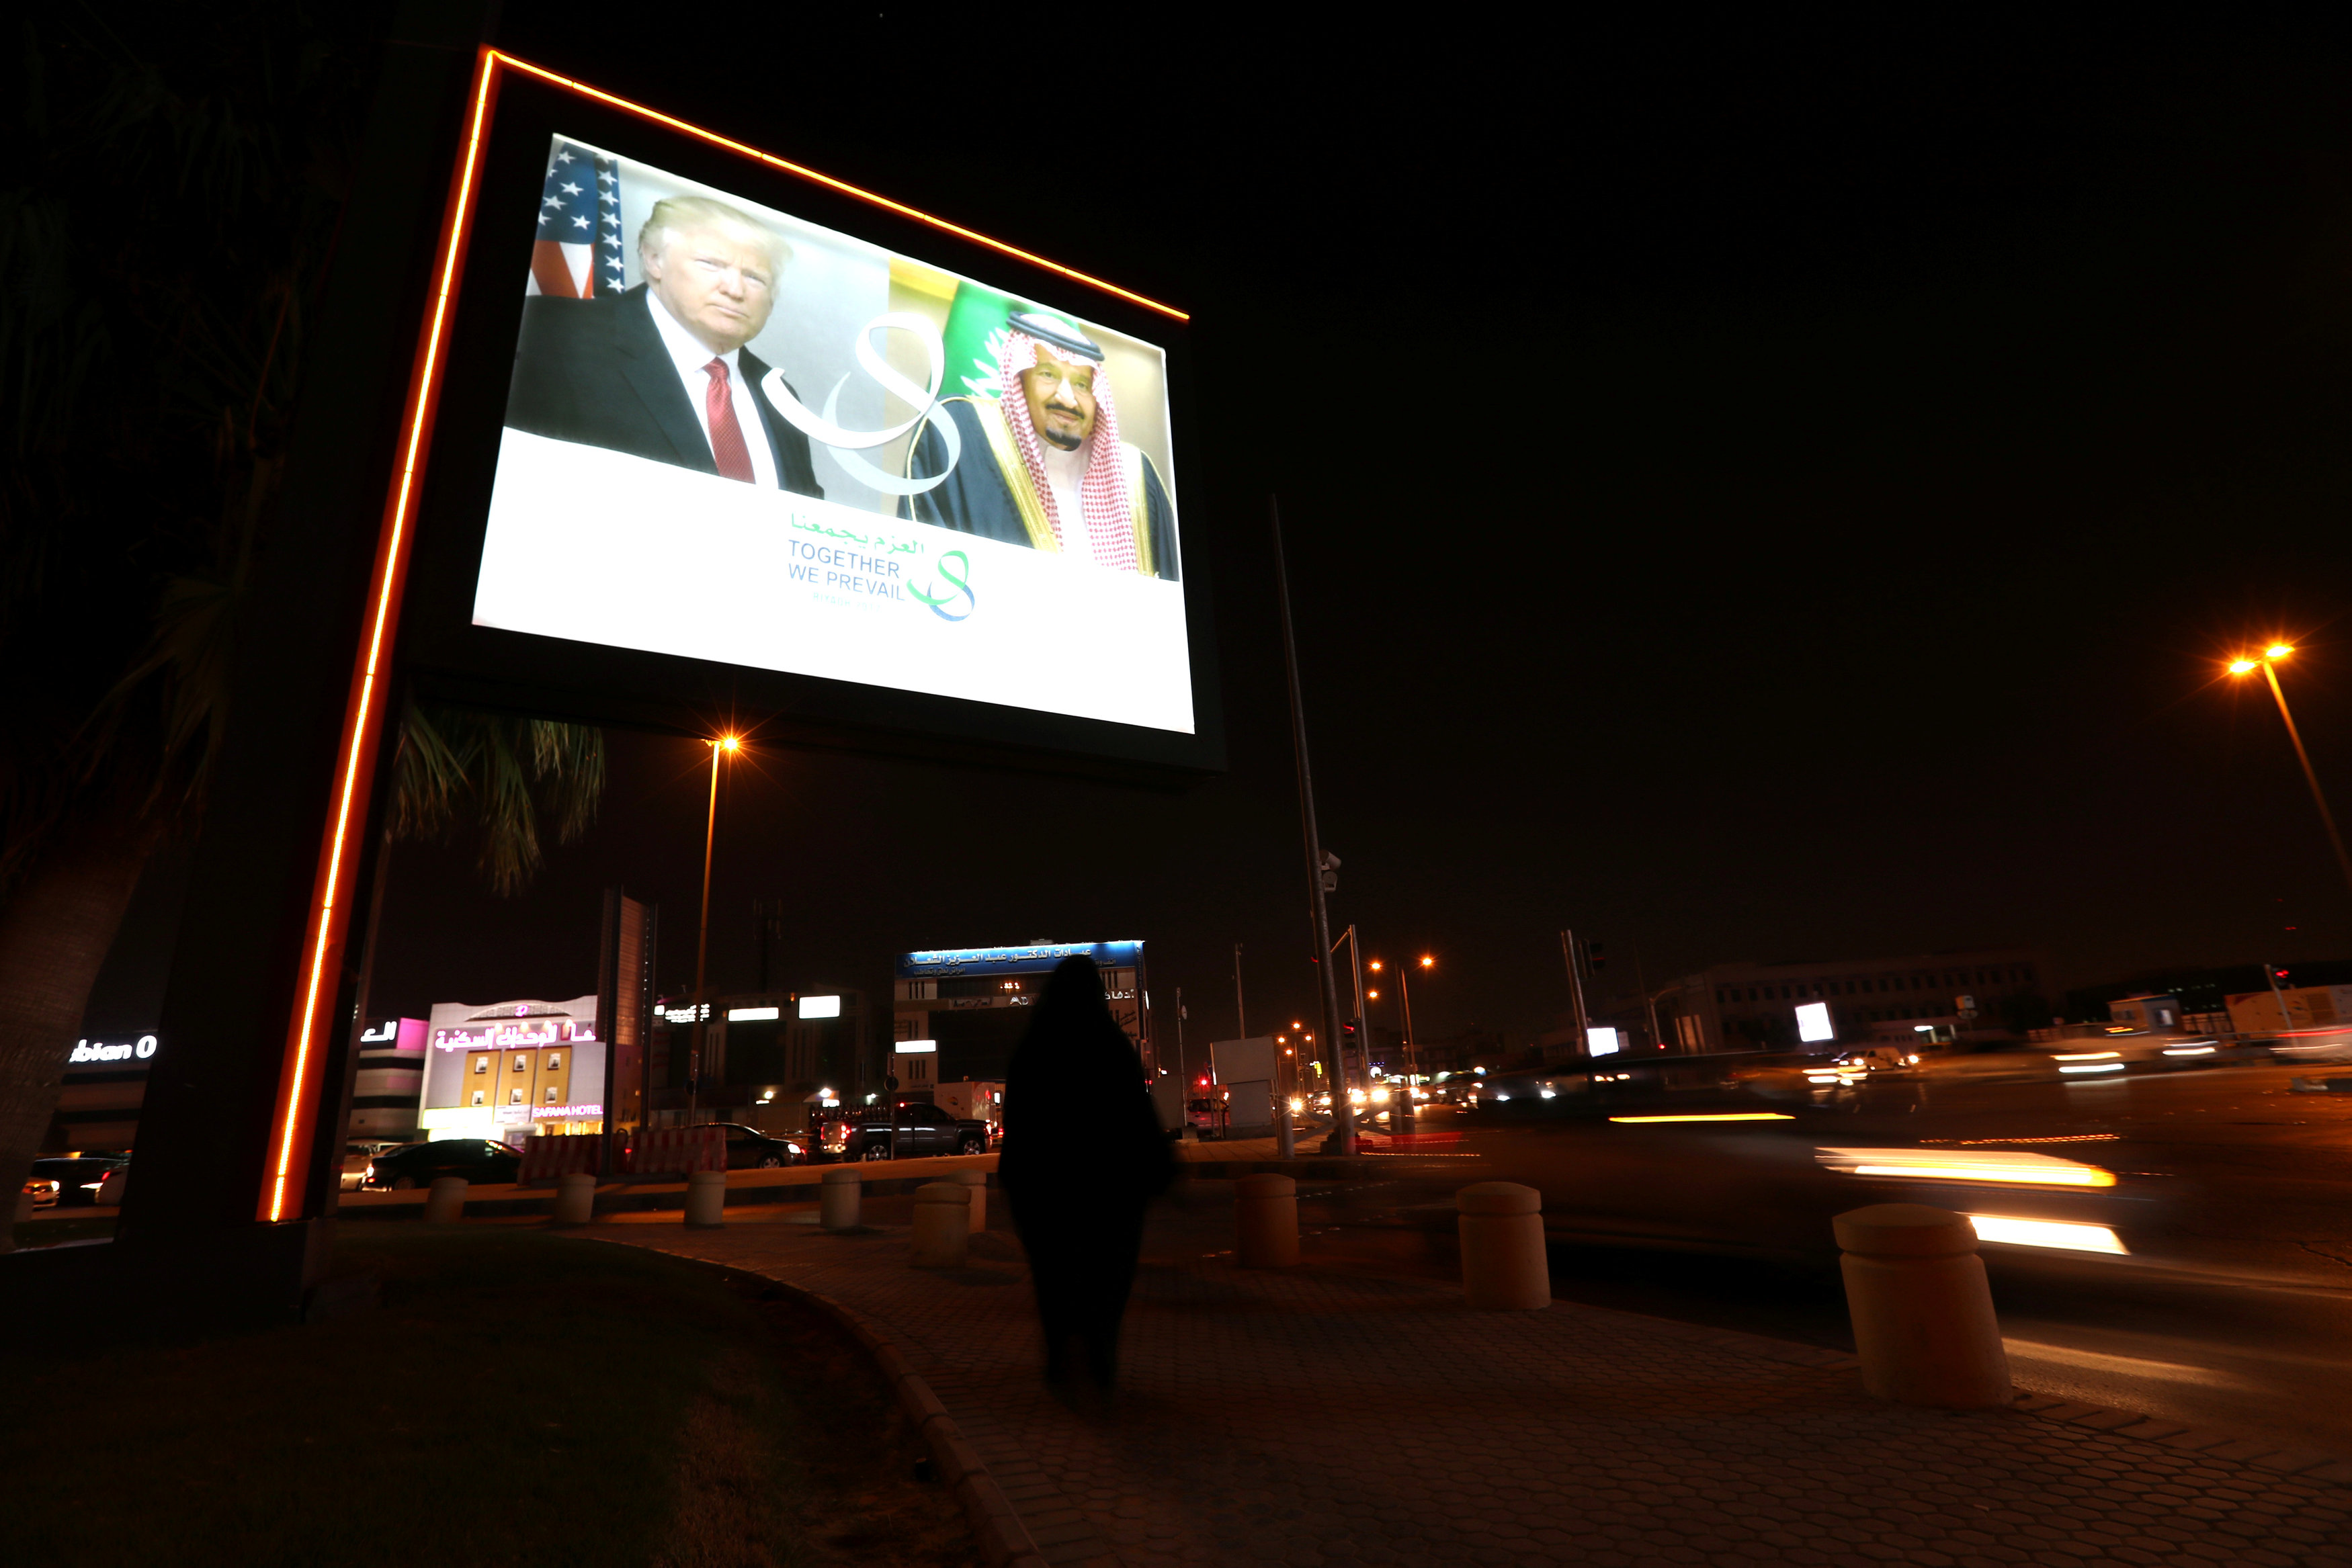 لافتة ضوئية تحمل صور الرئيس الأمريكى والعاهل السعودى